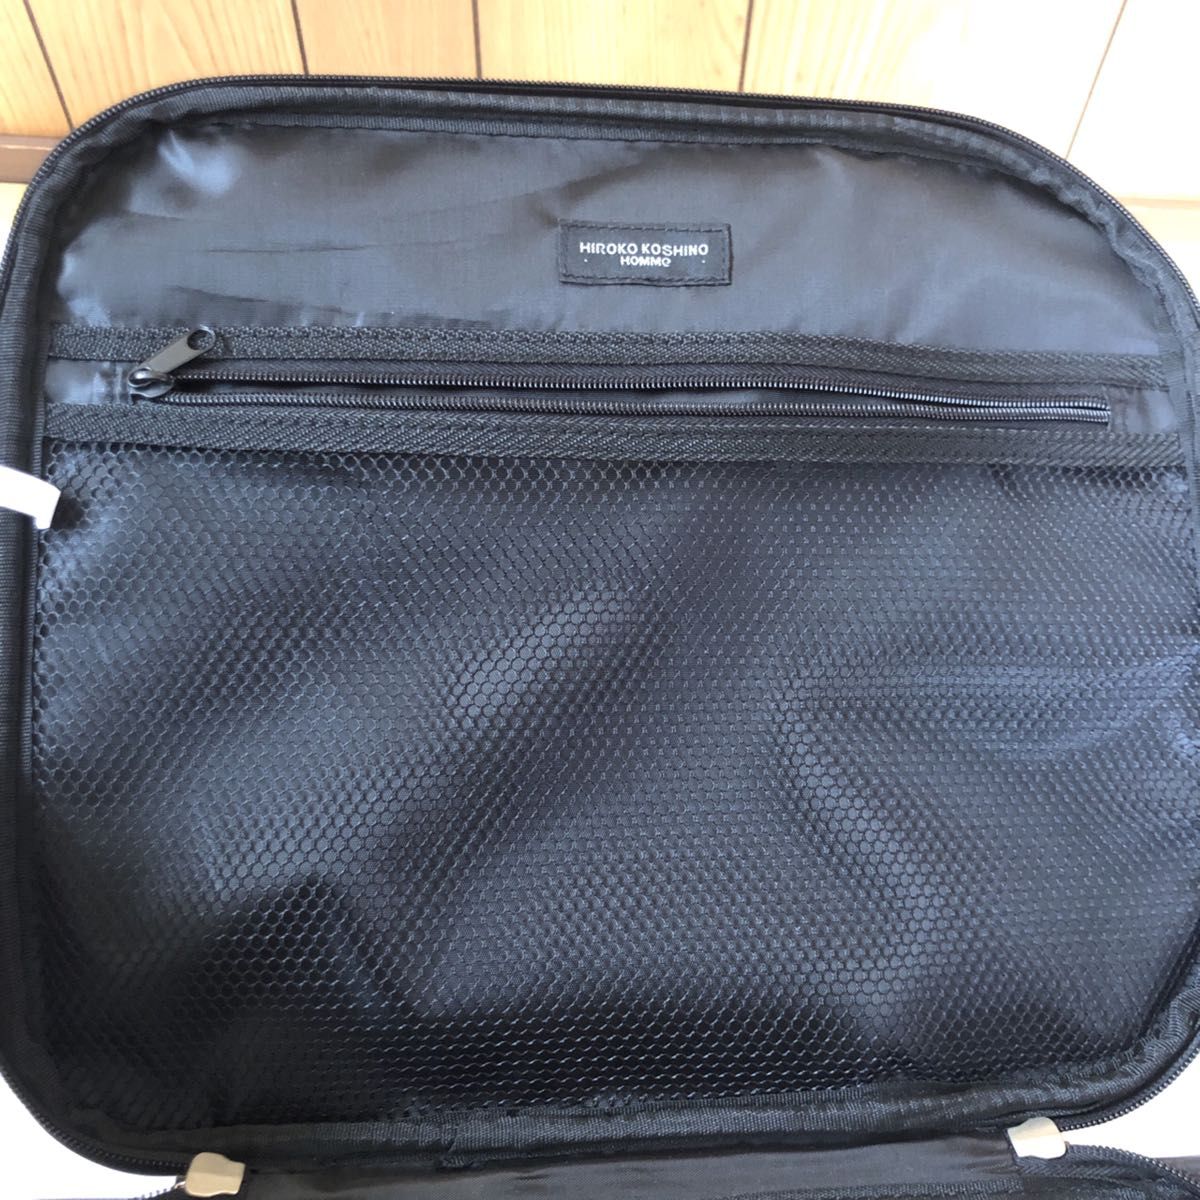 キャリーケース HIROKO KOSHINO HOMME スーツケース バッグ ブラック キャリーバッグ 黒